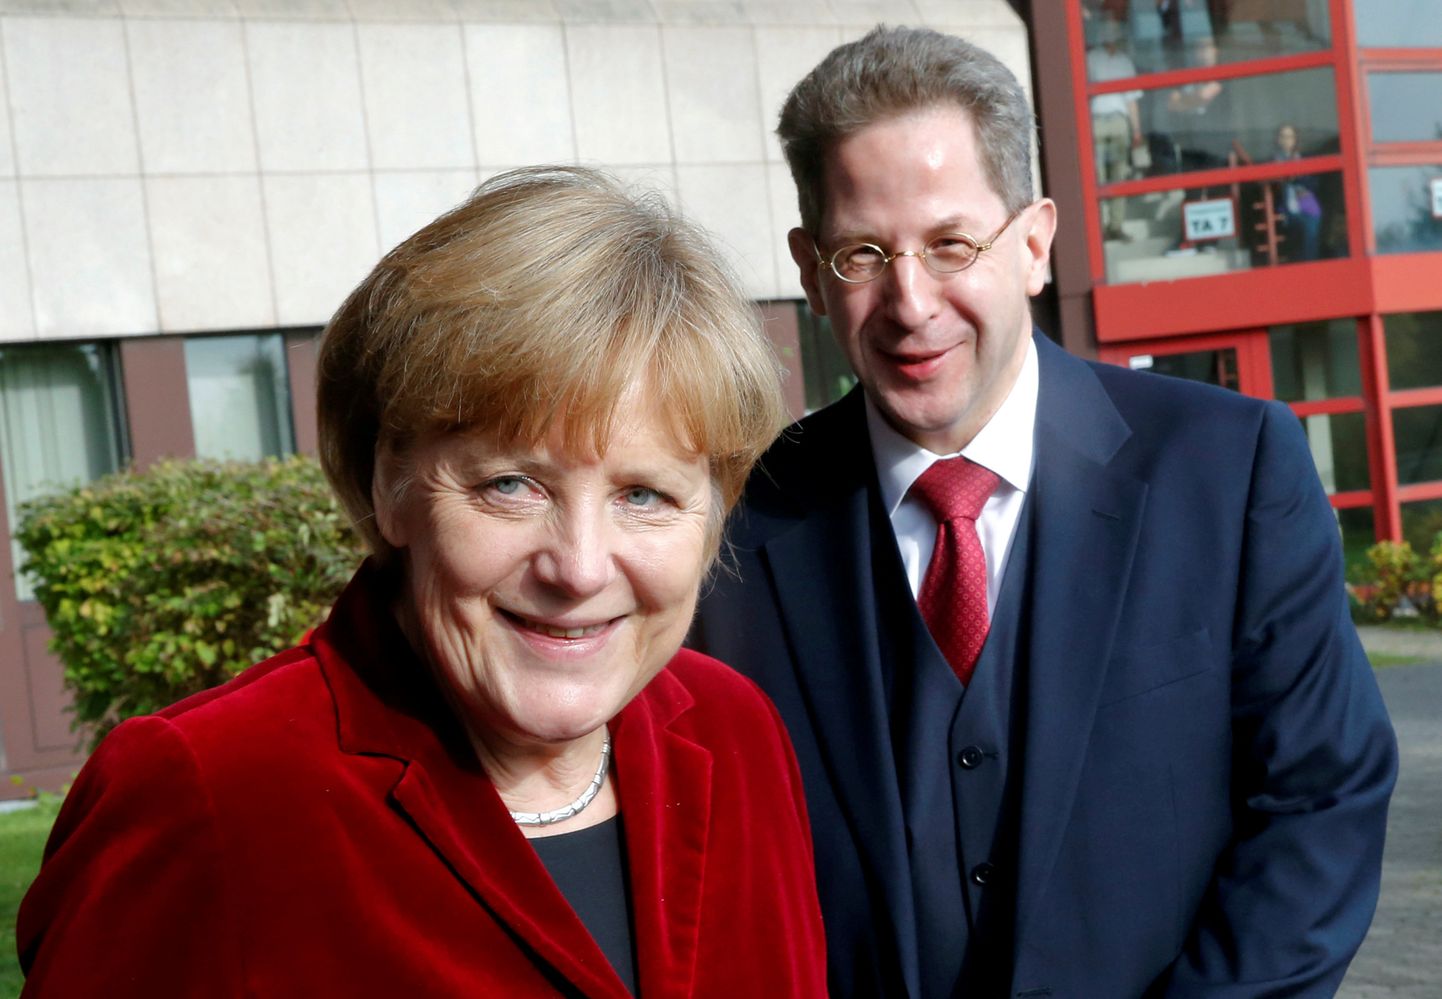 Saksamaa kantsler Angela Merkel ja vastuoluliste sõnavõttudega esinenud Hans-Georg Maassen üheskoos mõne aasta tagusel fotol.